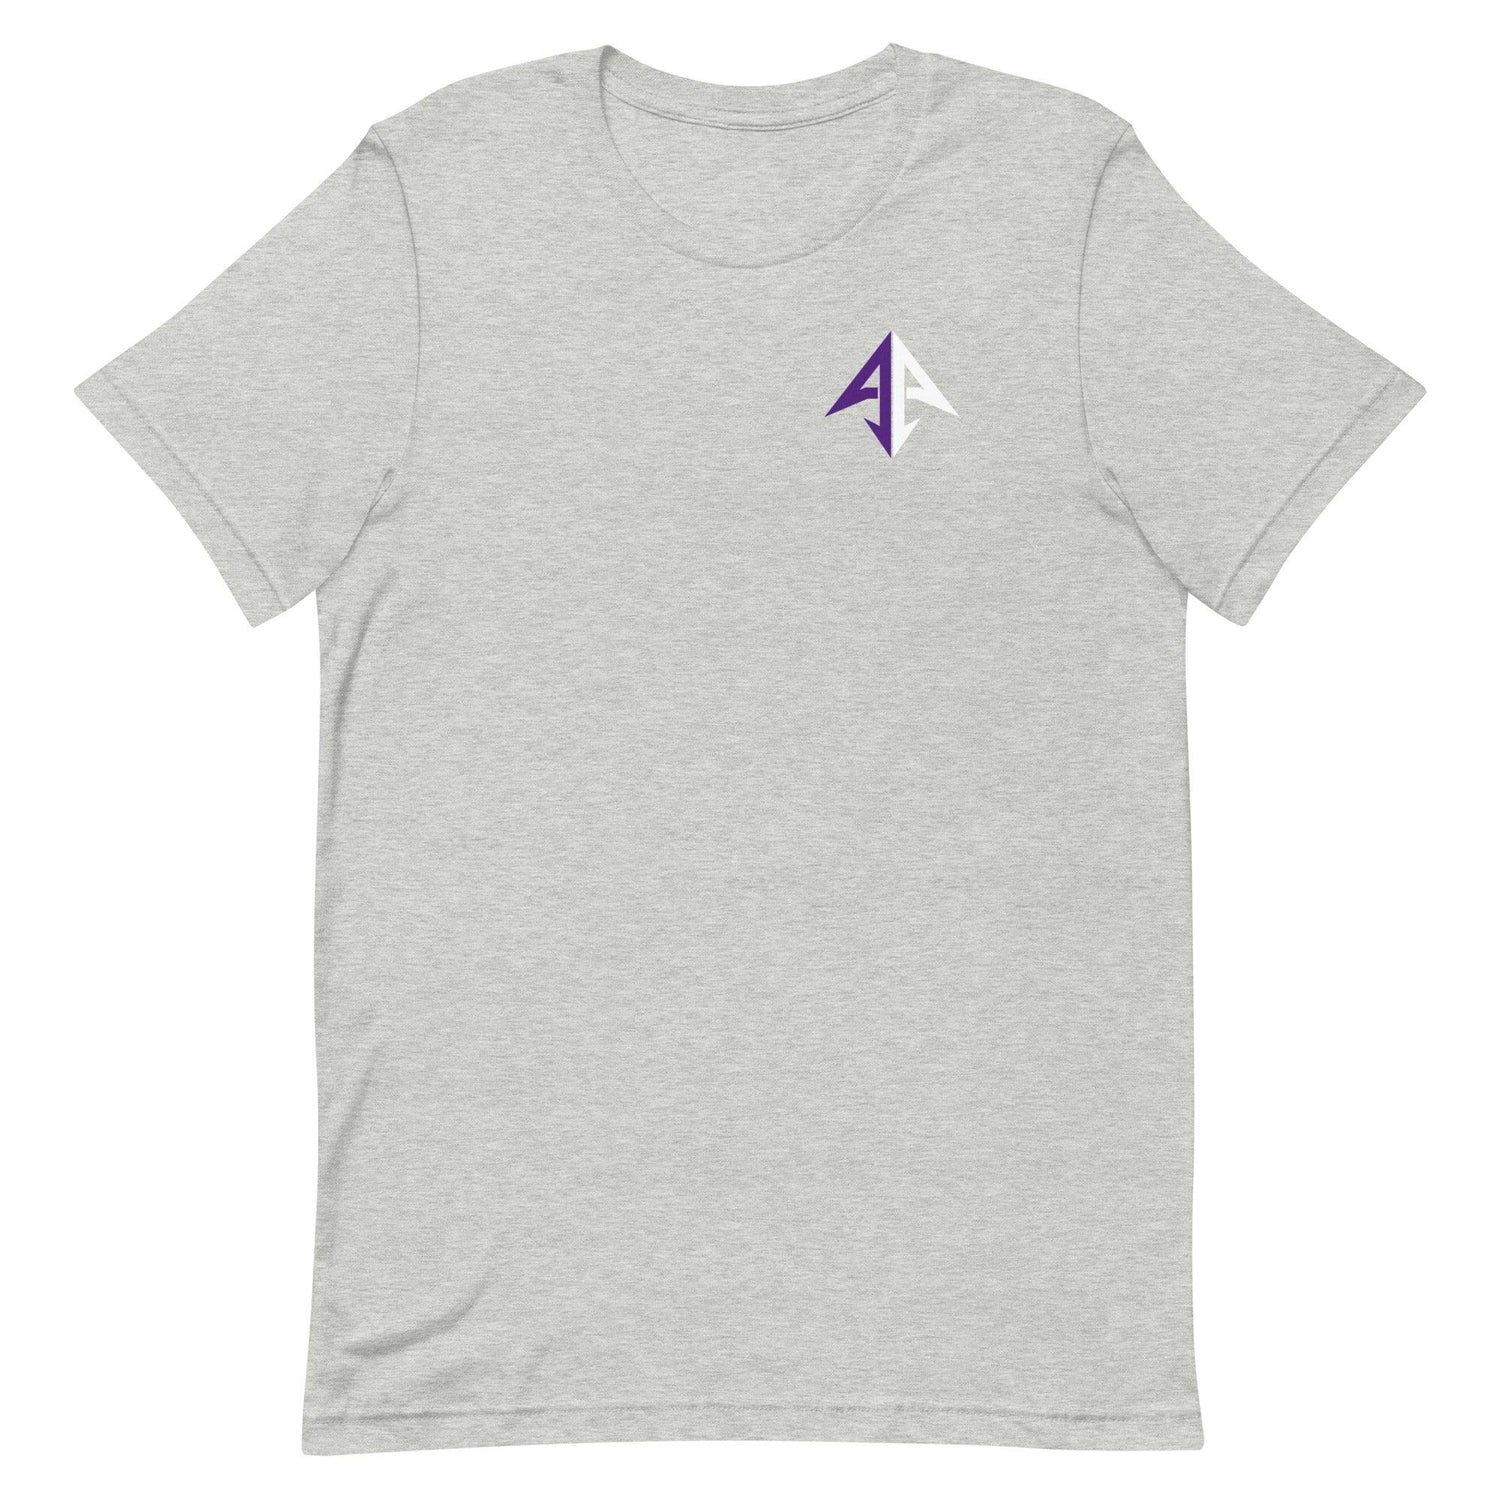 Alan Ali "Essential" t-shirt - Fan Arch